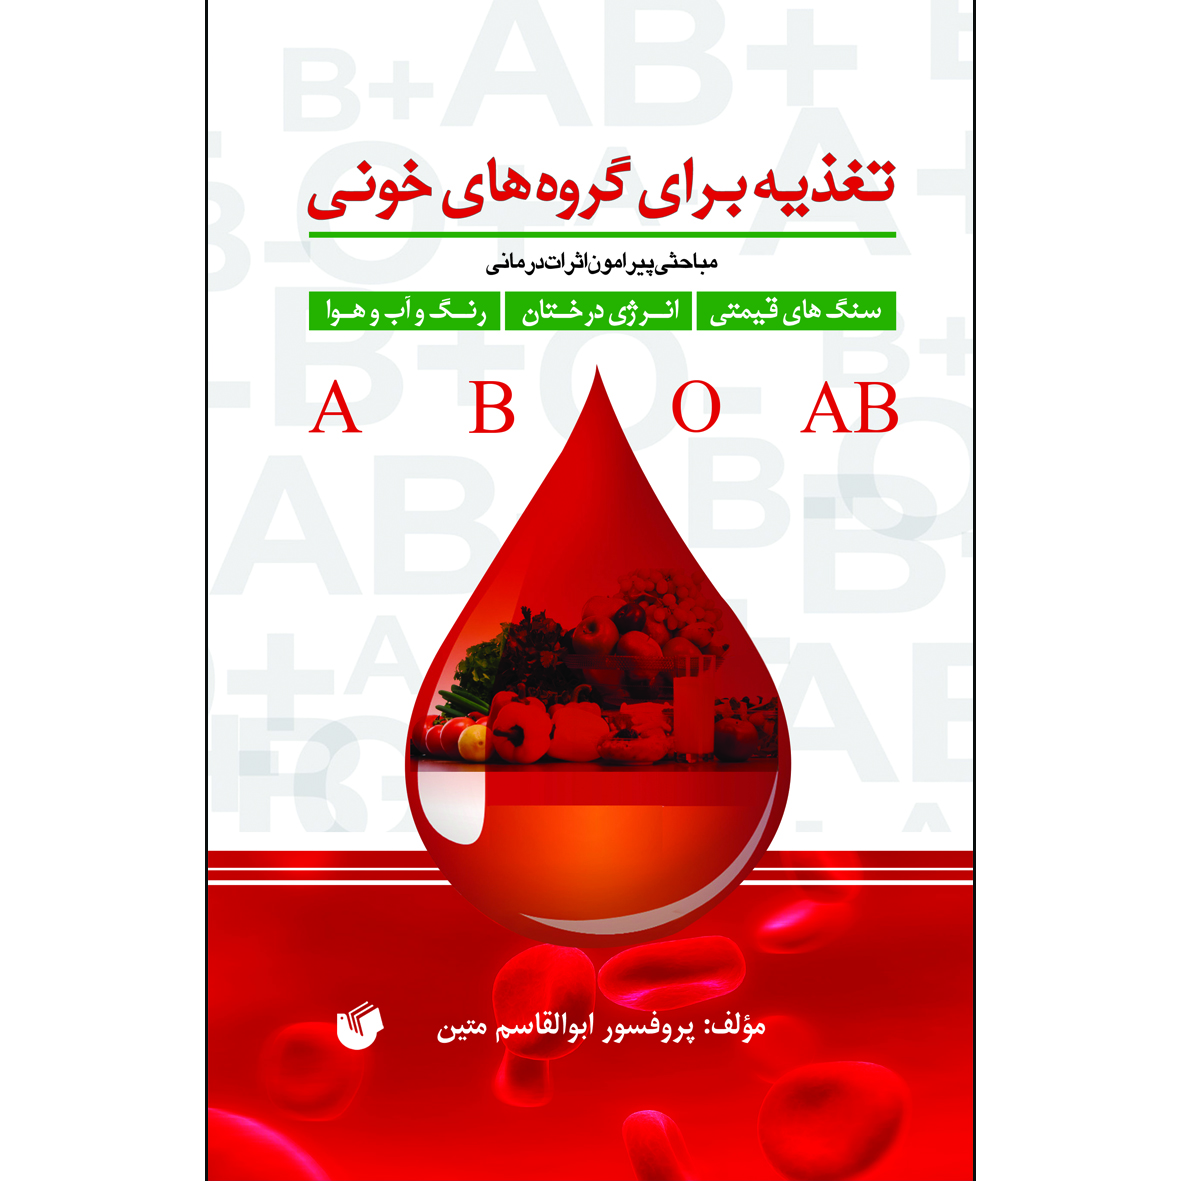 کتاب تغذیه برای گروه های خونی اثر پروفسور ابوالقاسم متین انتشارات سفیراردهال 